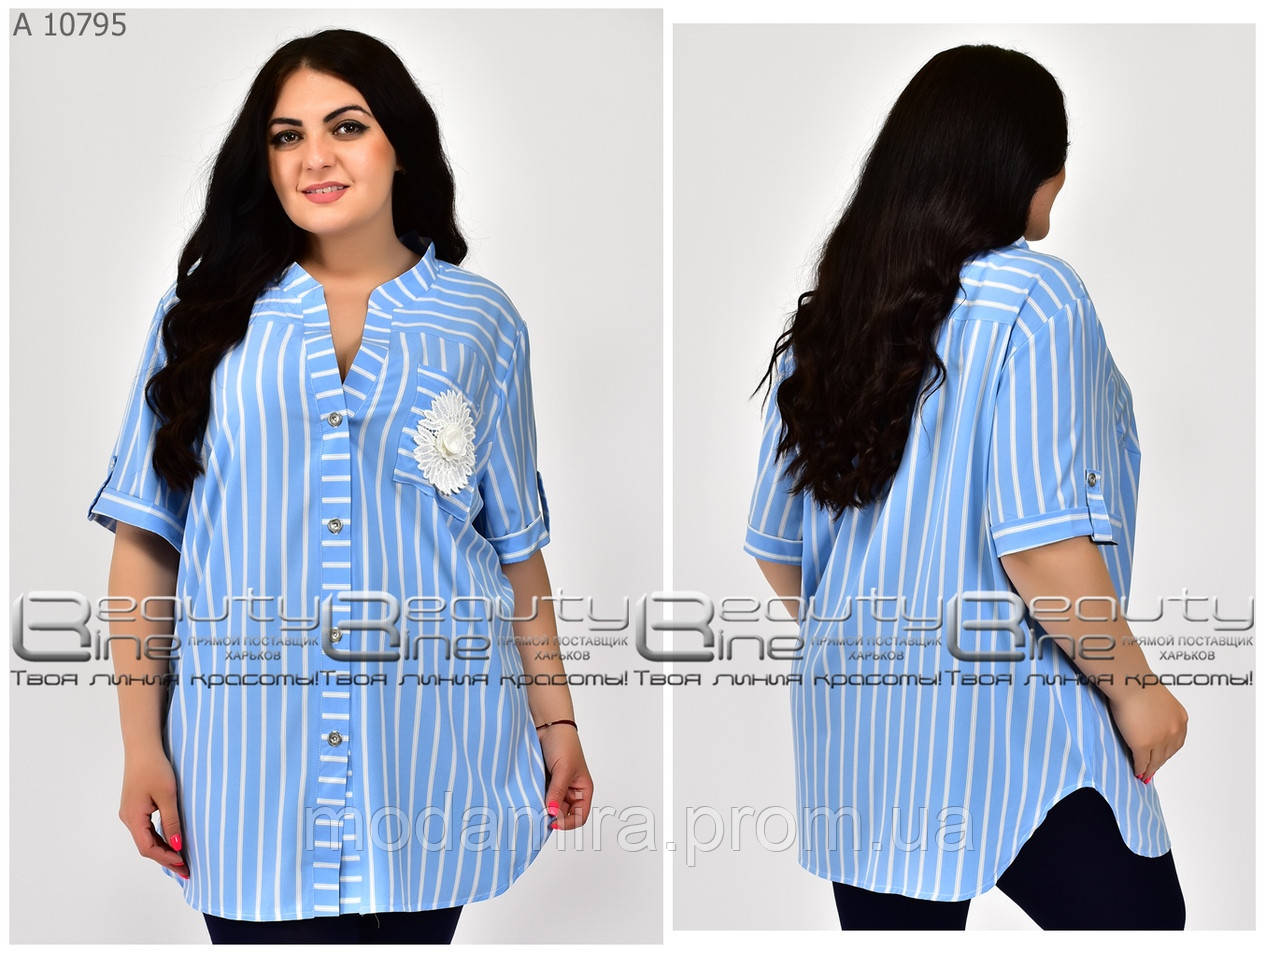 

Женская летняя нарядная блуза - рубашка в полоску большого размера р-52,54,56, 58, 60, 62, 64, 66 на пуговицах, Разные цвета